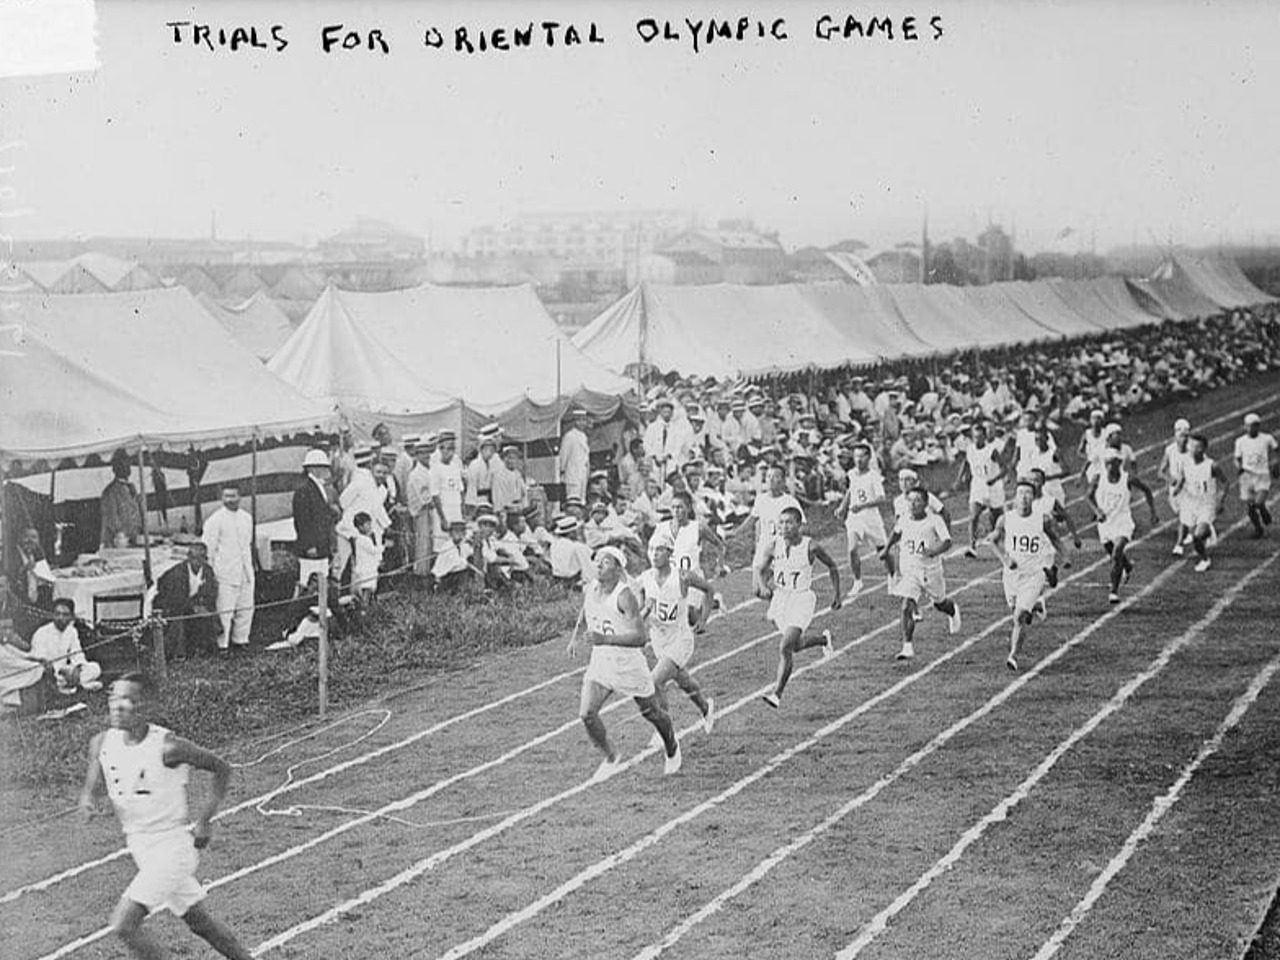 Photo d'archives George Grantham Bain Collection ; course de préparation aux jeux olympiques